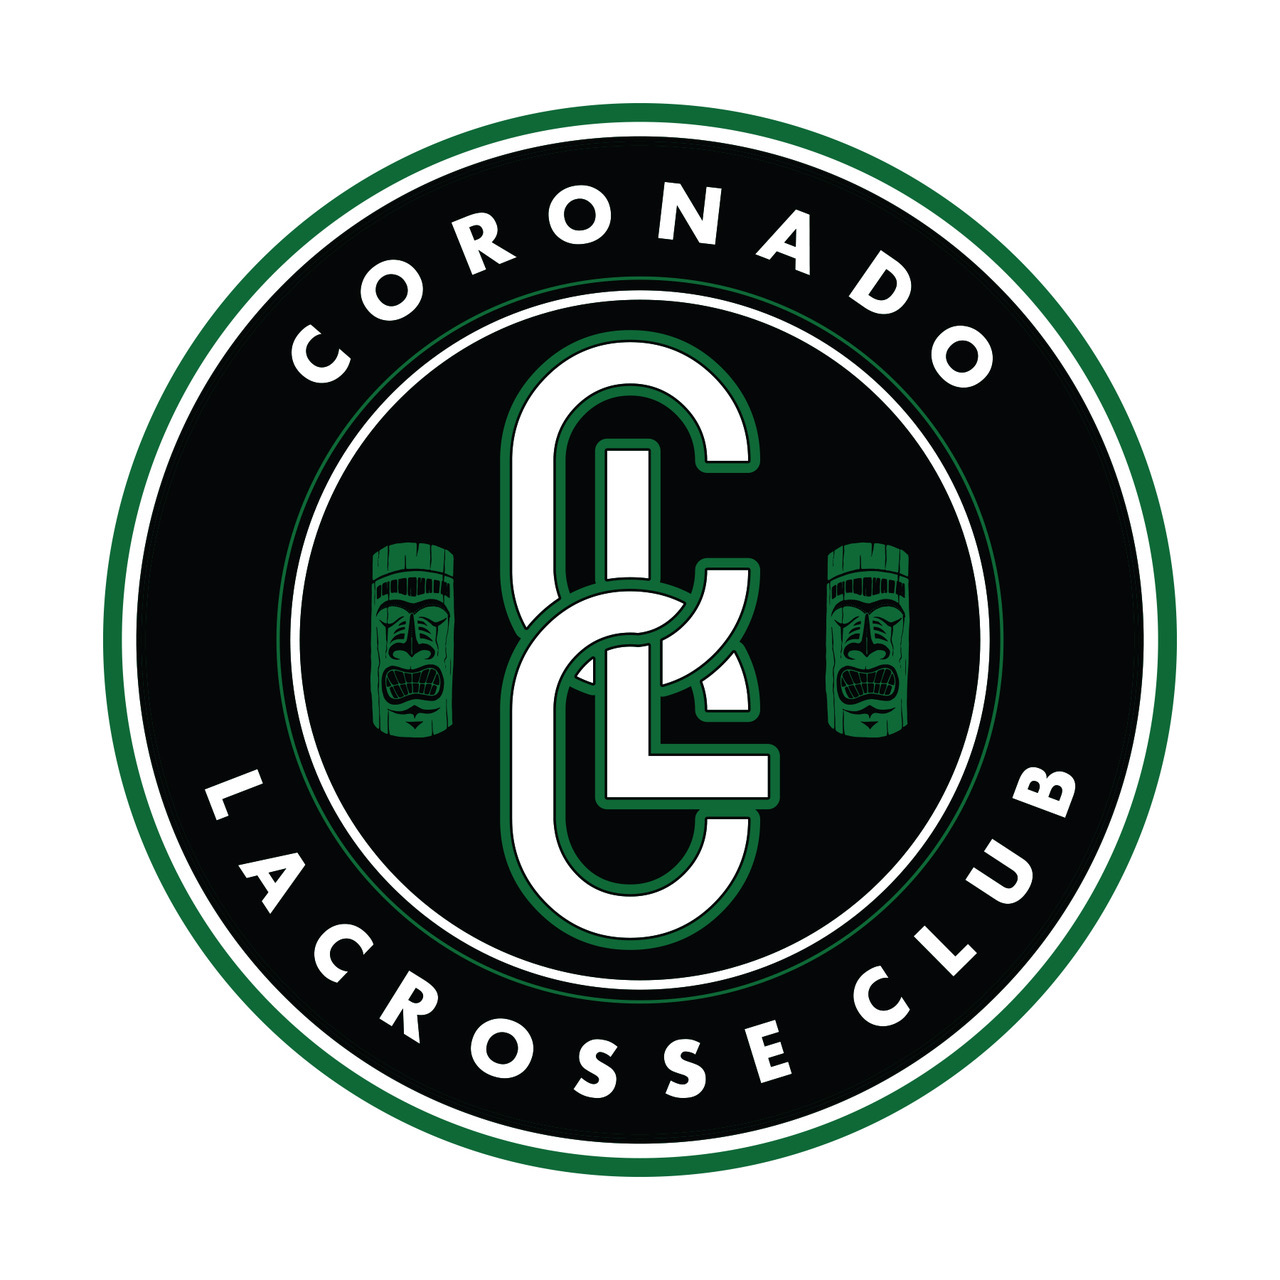 Coronado Lacrosse Club